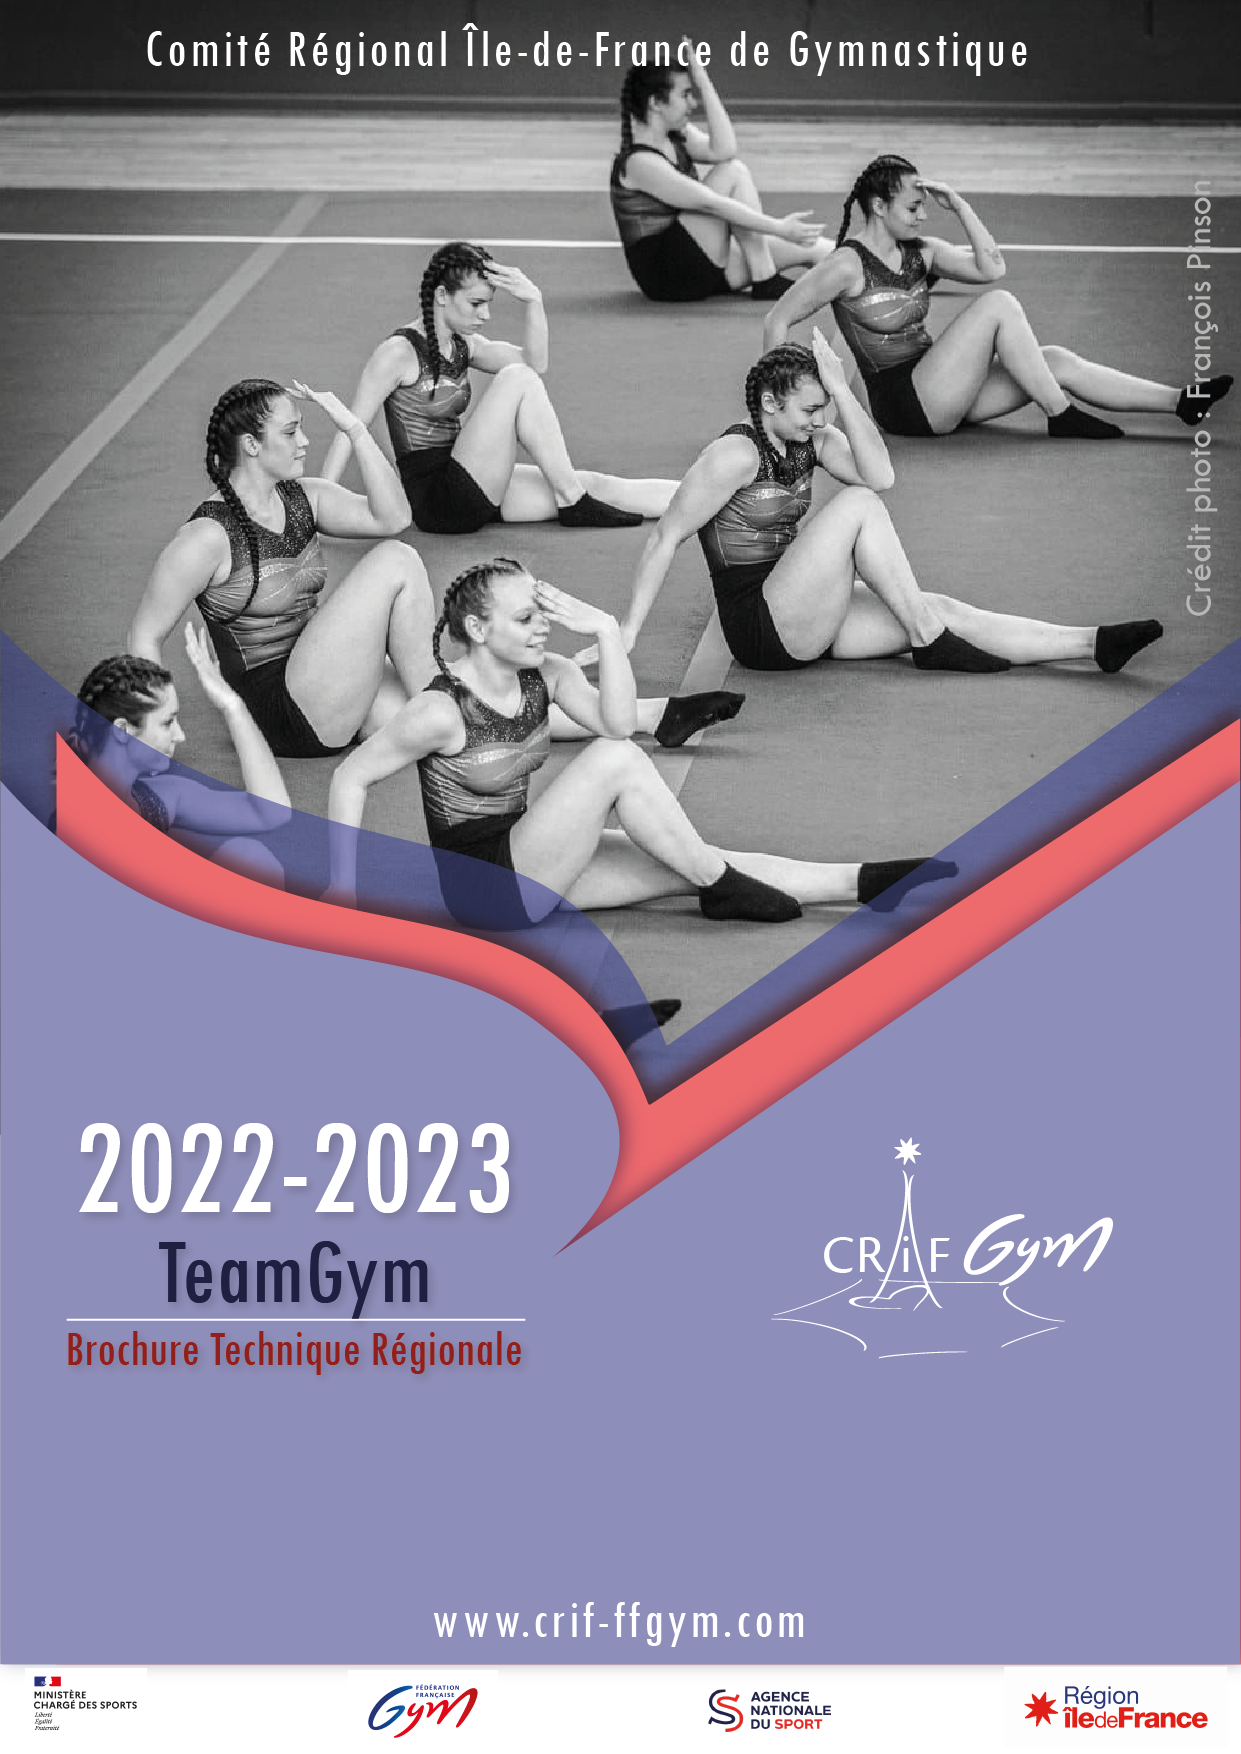 TEAMGYM : Brochure technique régionale 2022-2023